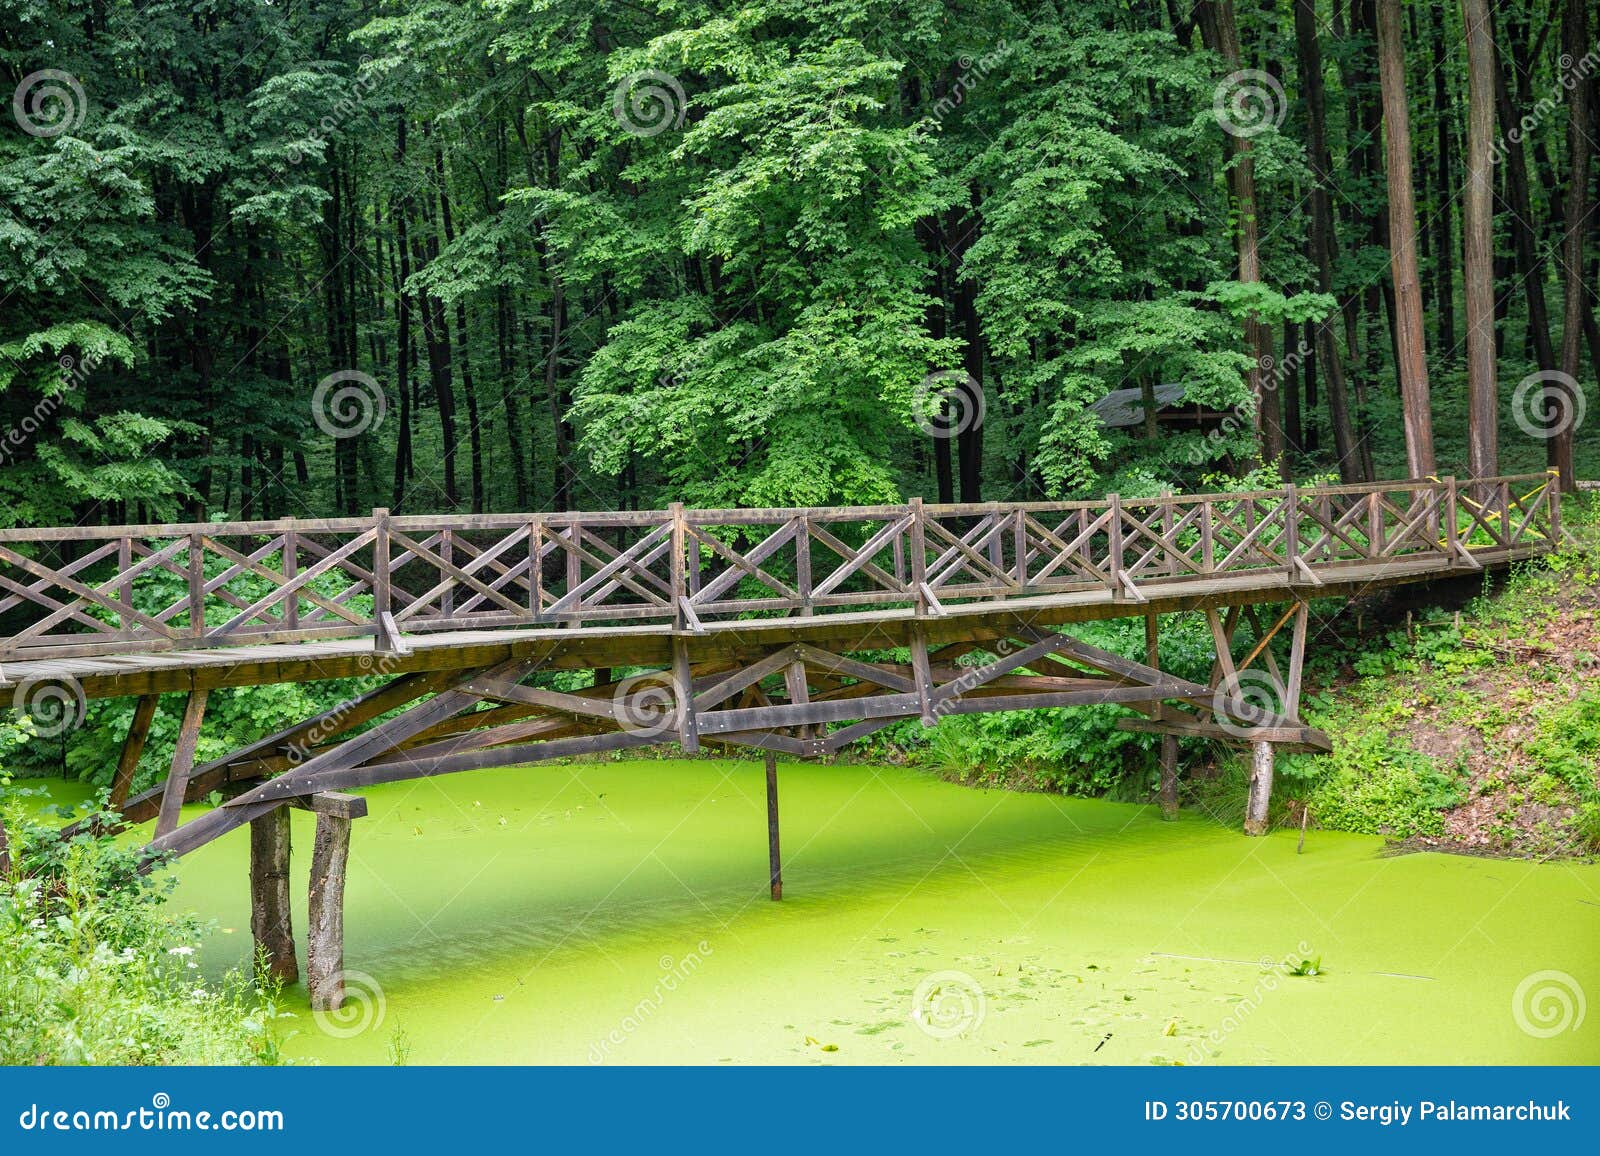 wooden foot bridge over pond in halych ethnography museum, ukraine